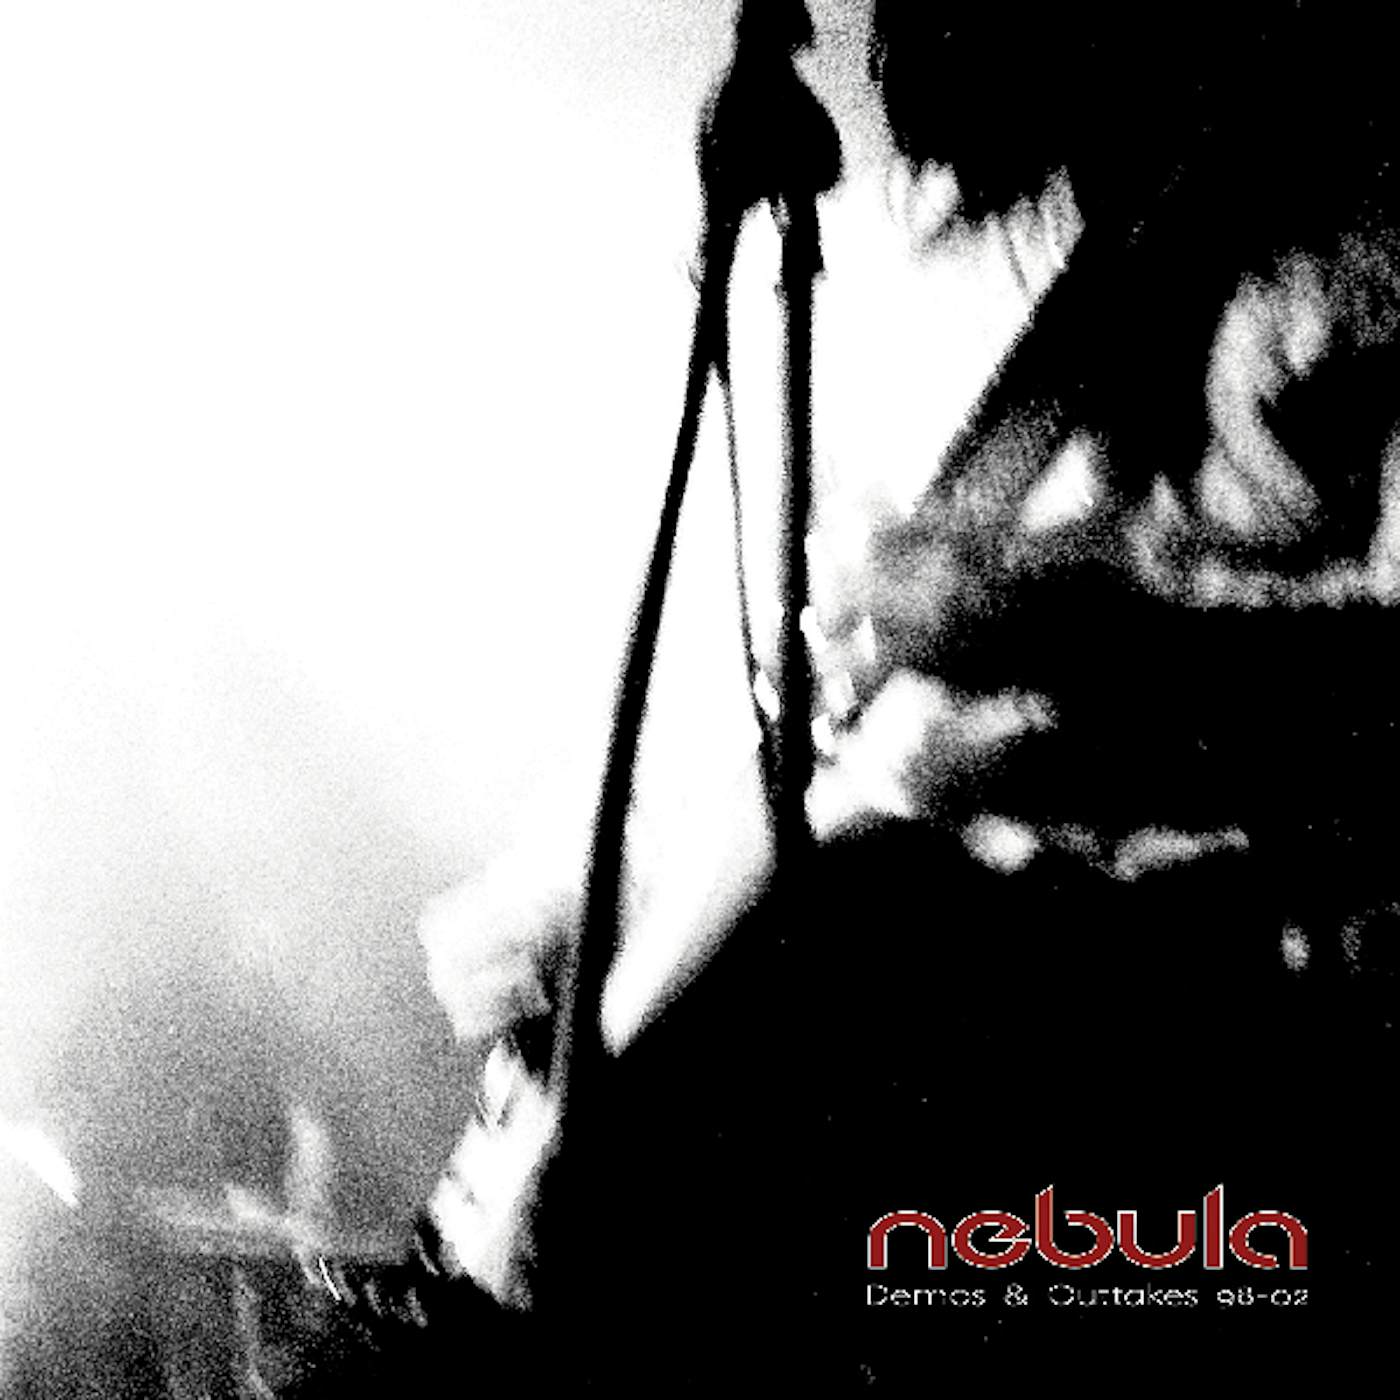 Nebula DEMOS & OUTTAKES 98 02 Vinyl Record